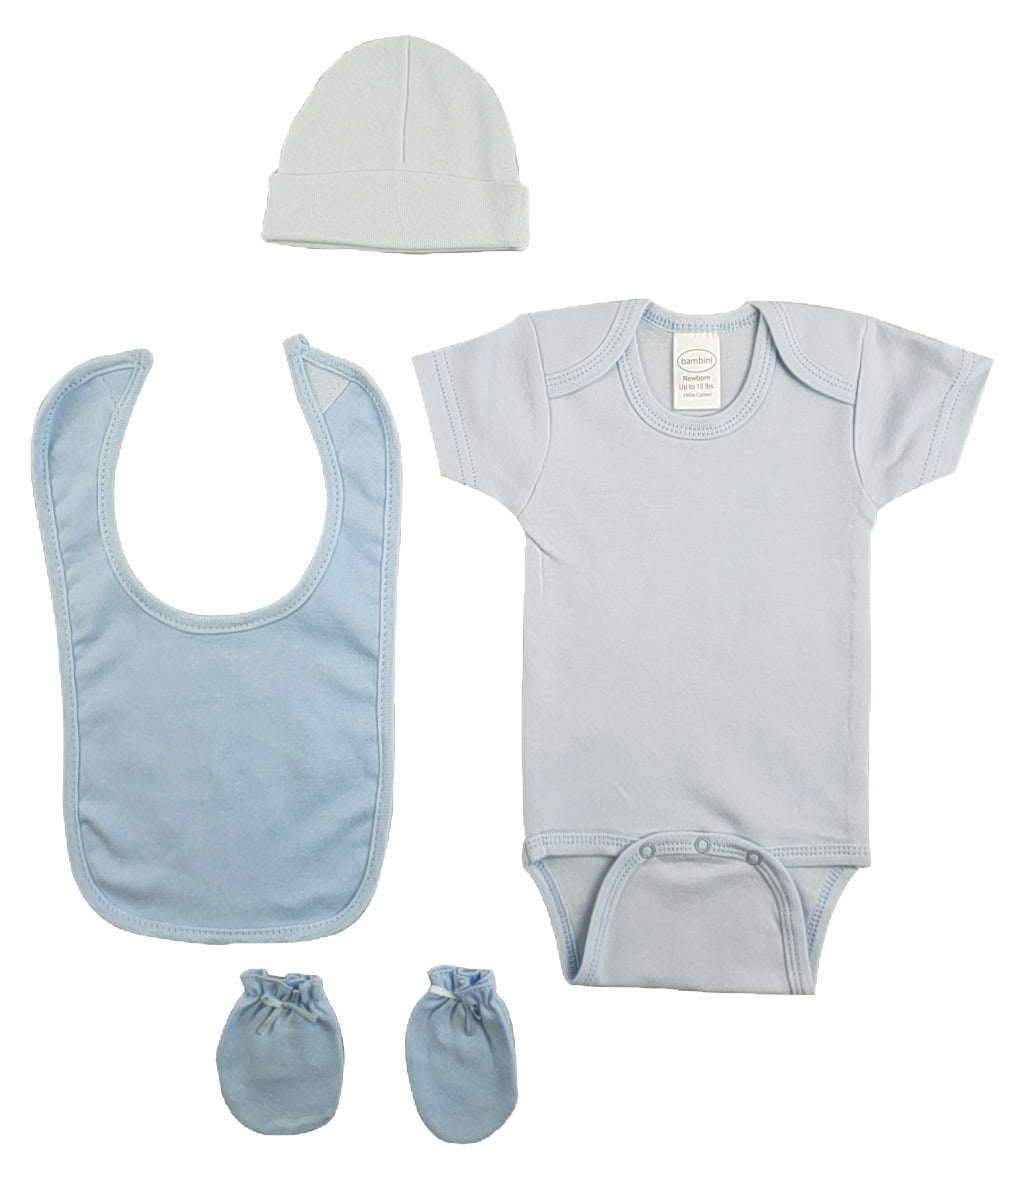 Blue 4 Piece Baby Clothes Set - Walmart.com - Walmart.com